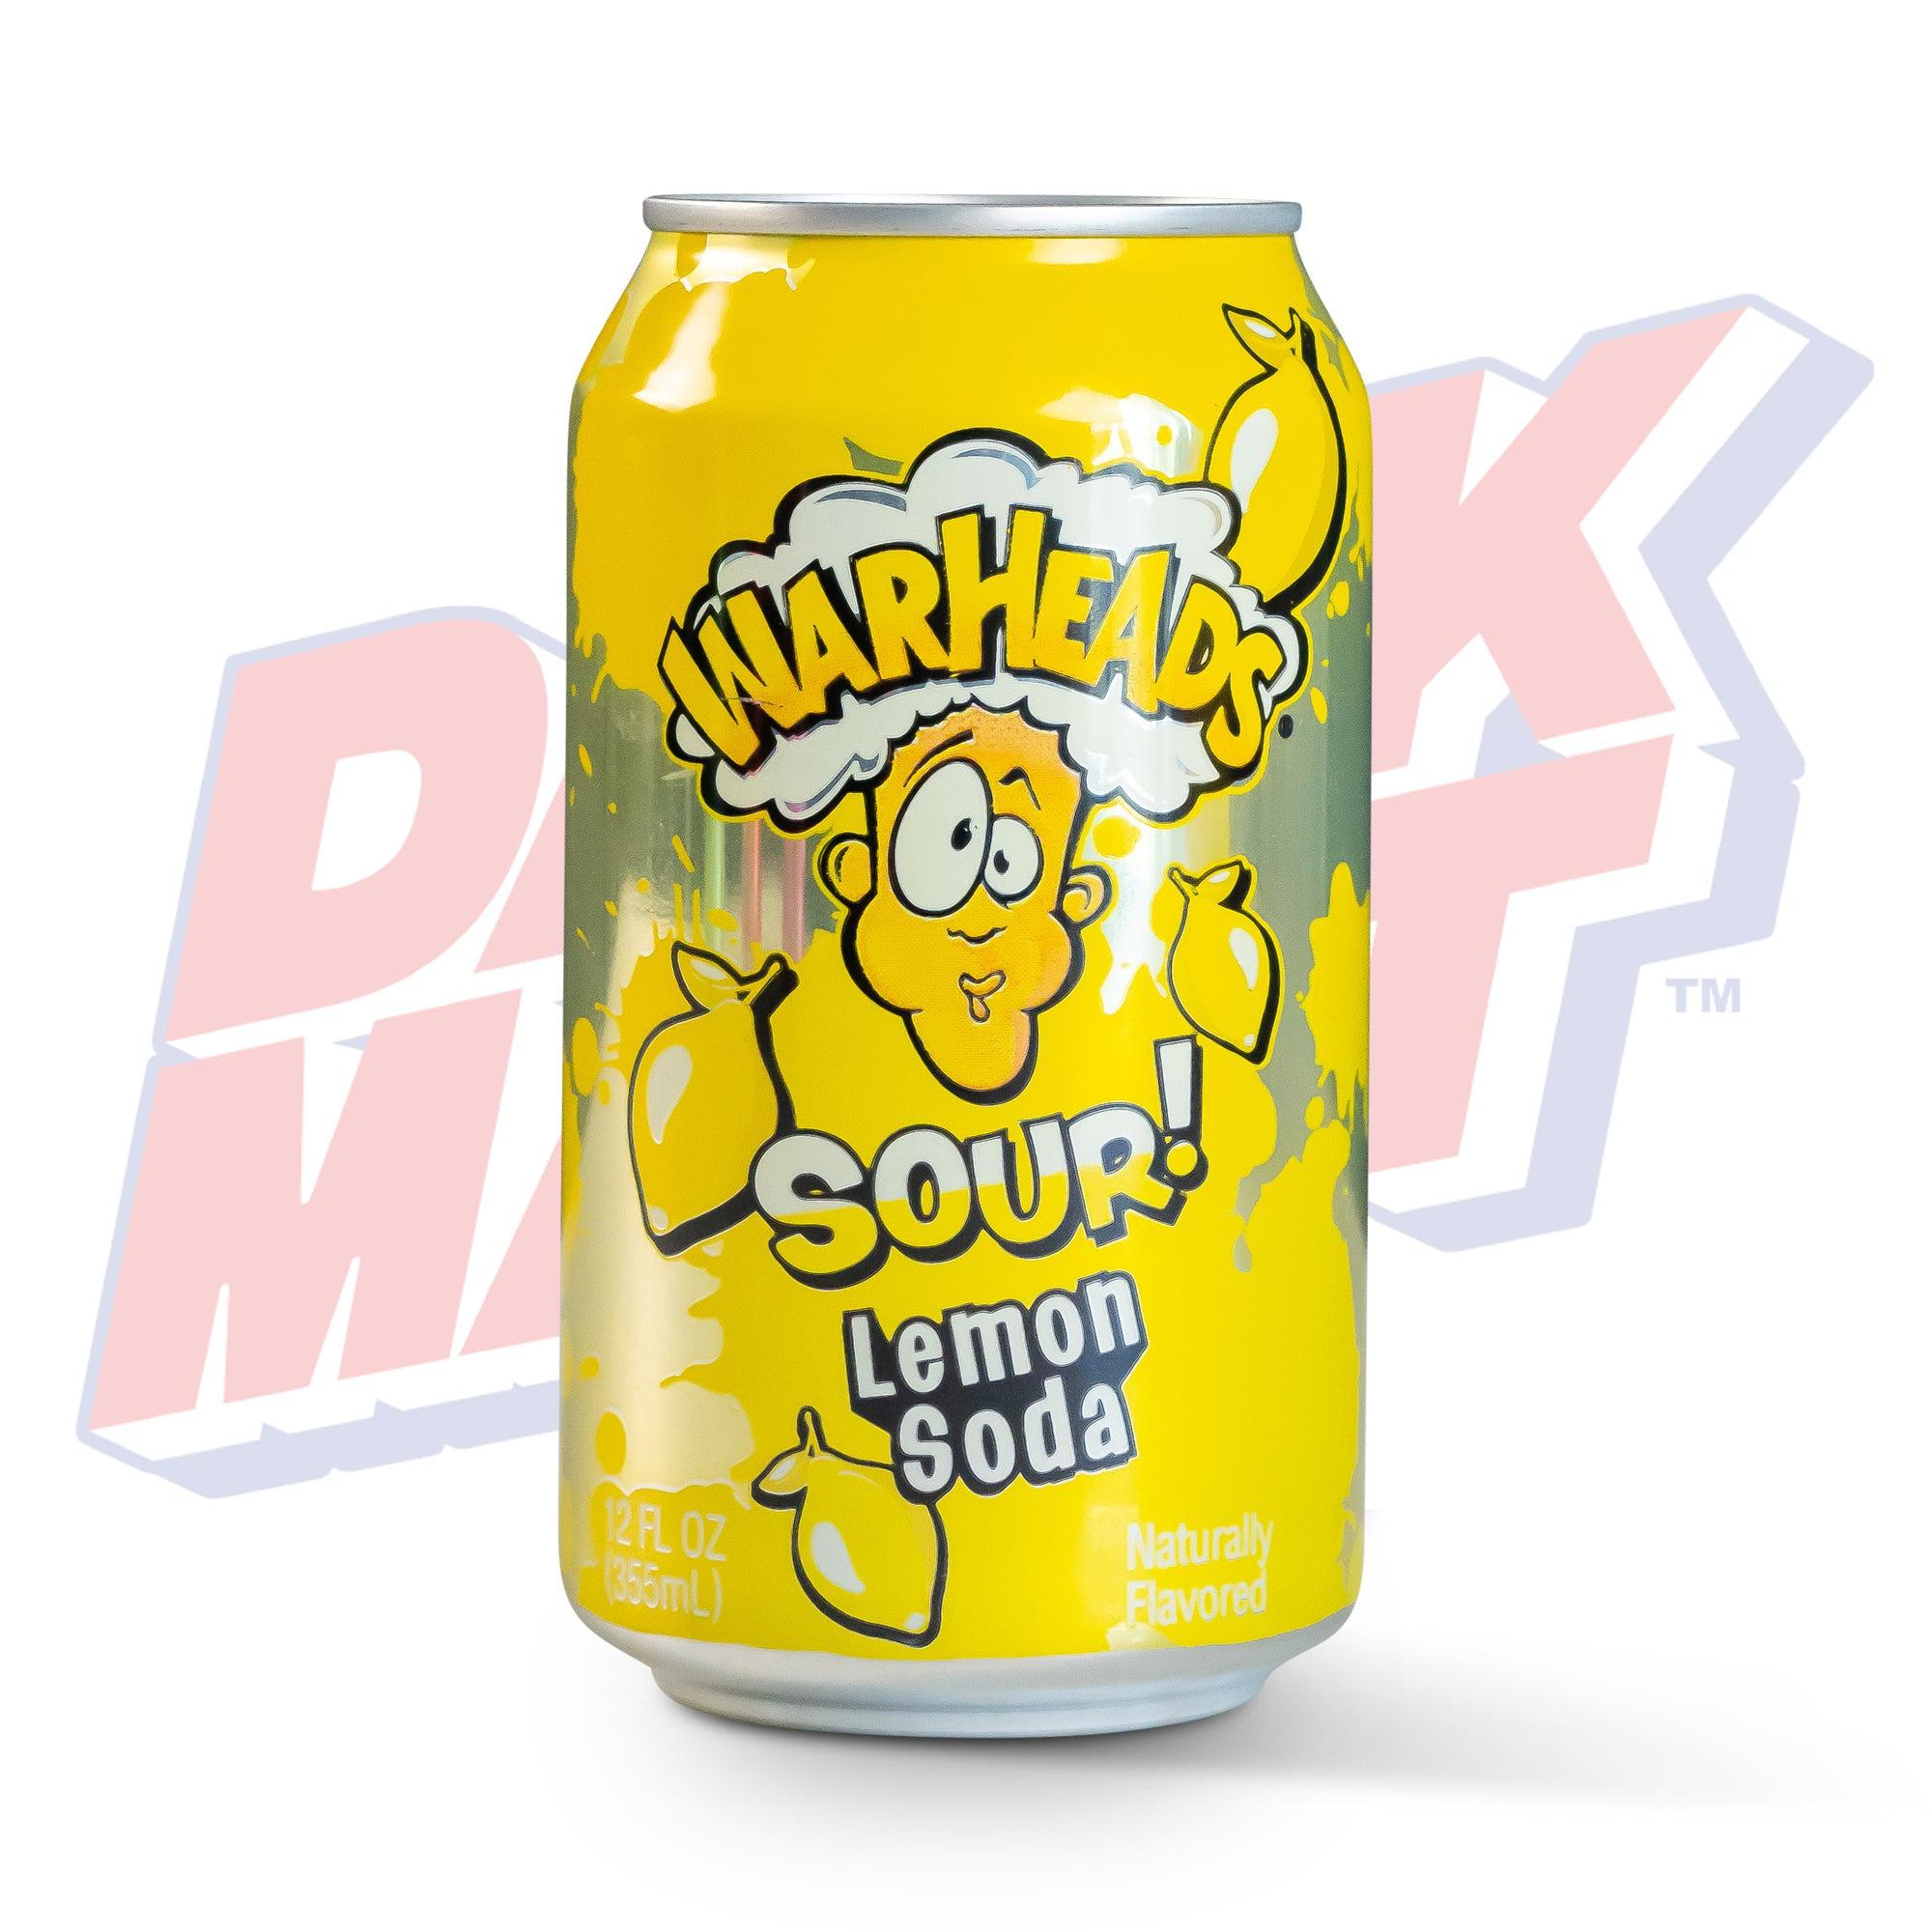 Warheads Sour Lemon Soda - 355ml